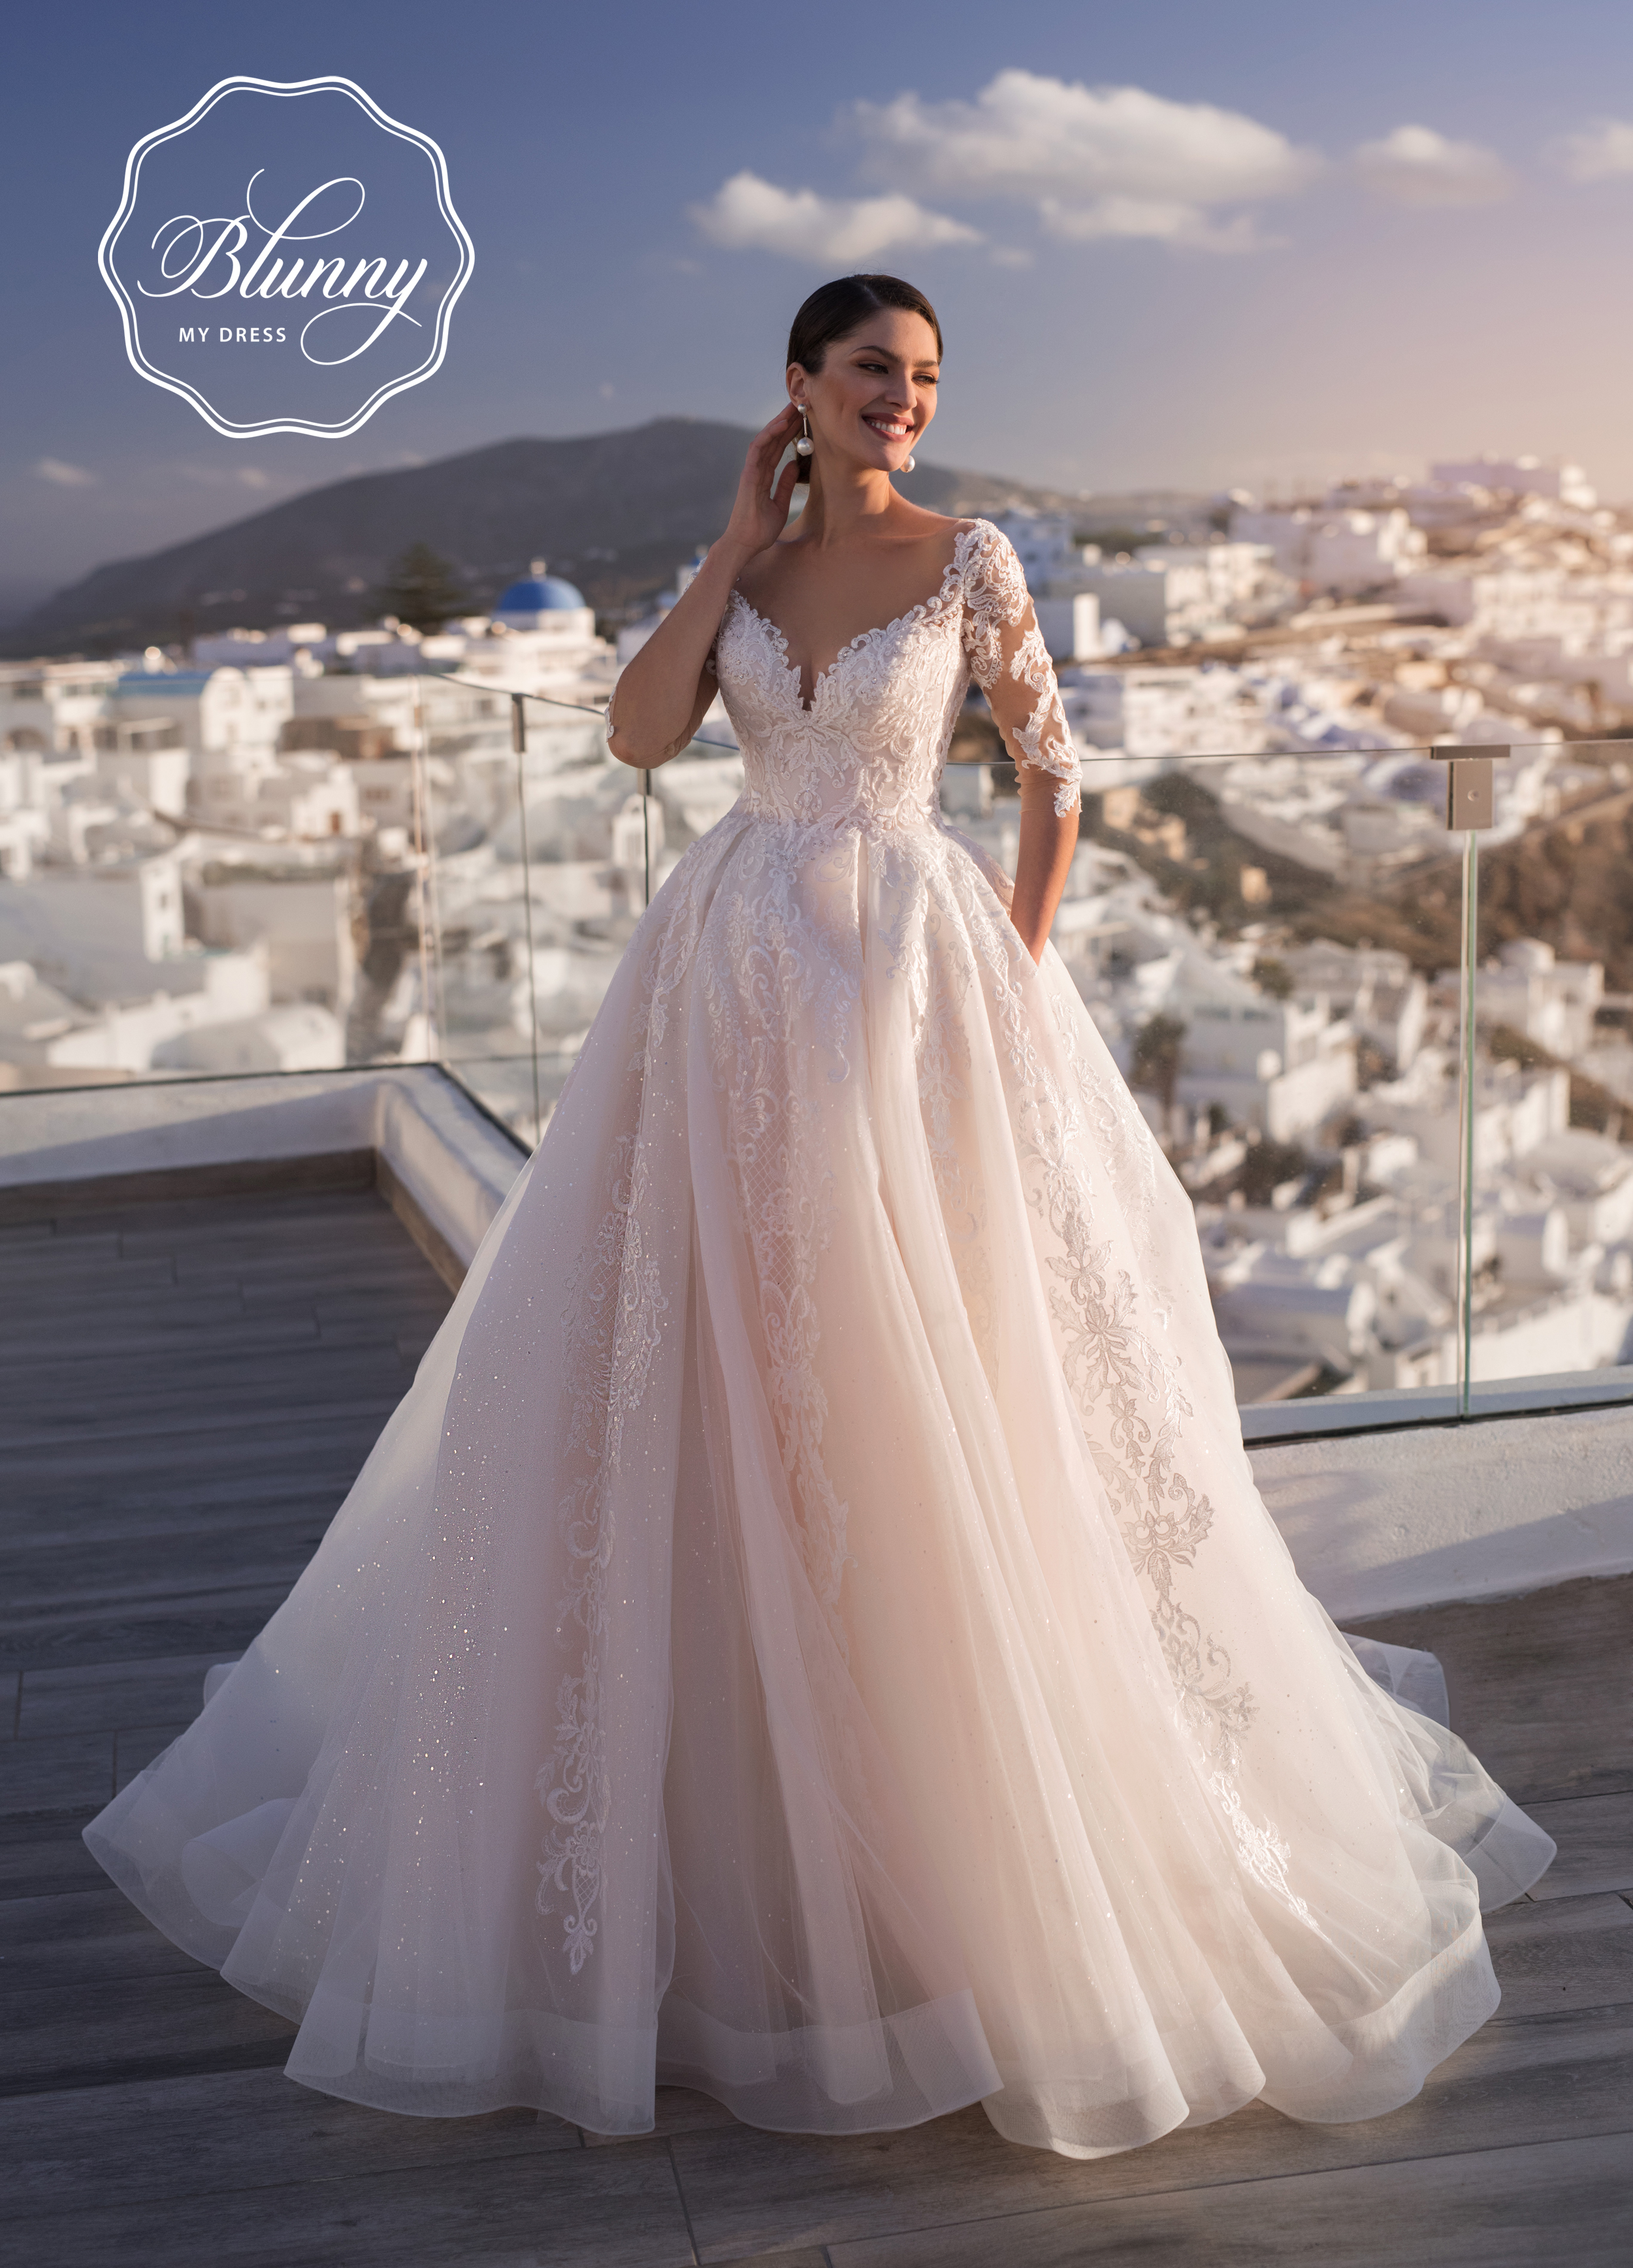 blunny-naviblue-lora-21035-wedding-dress